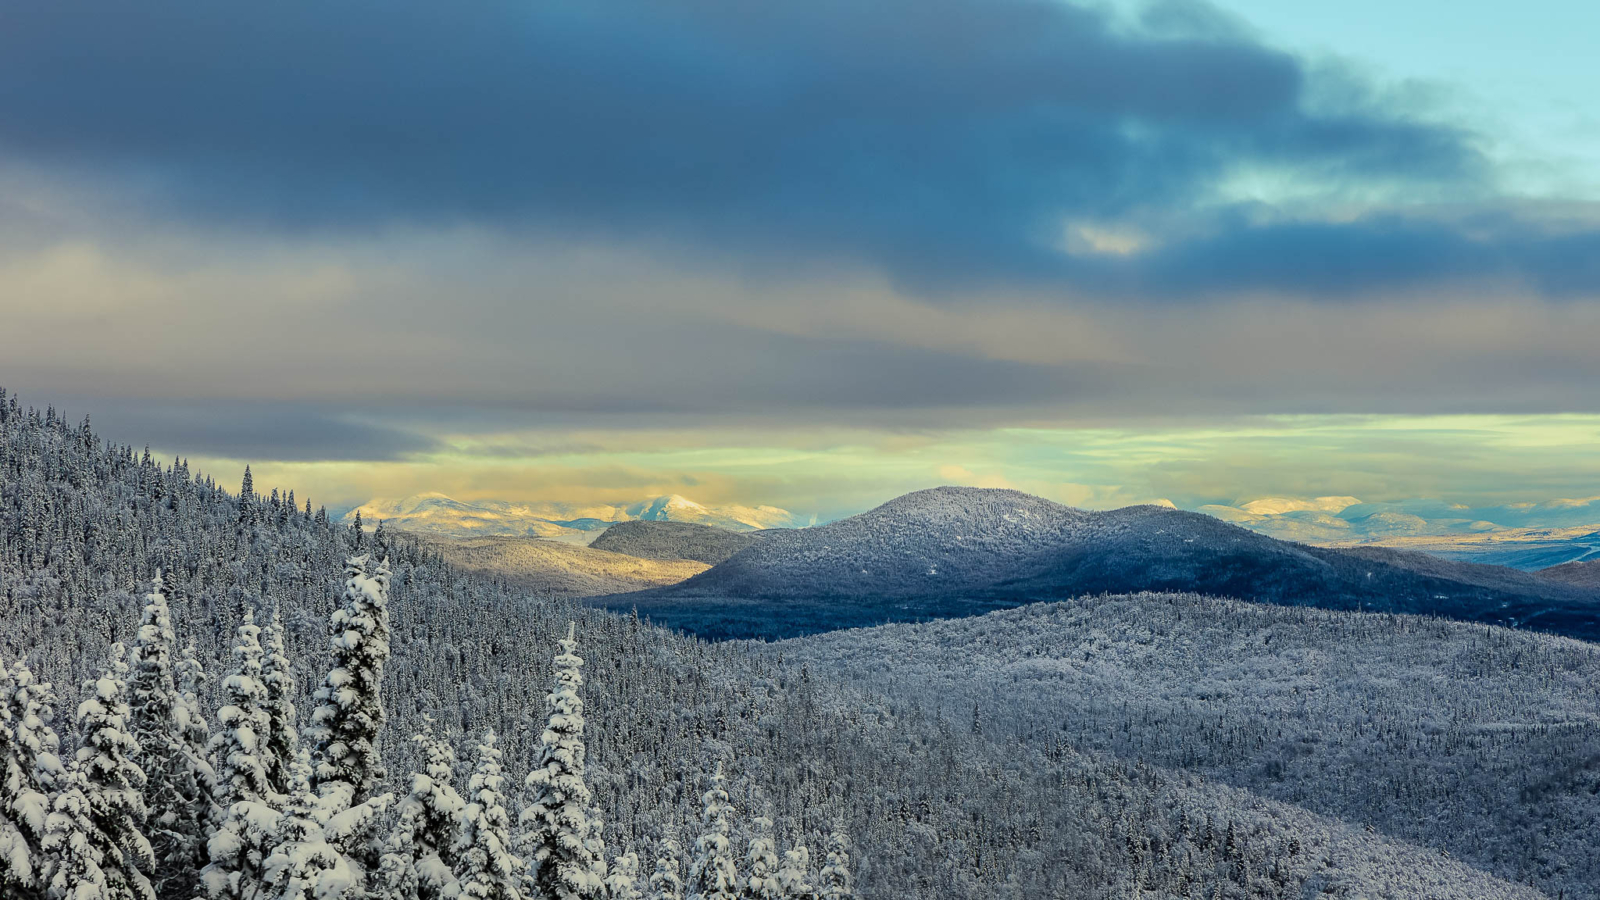 Un paysage d'hiver si enchanteur! (Alain Blanchette)